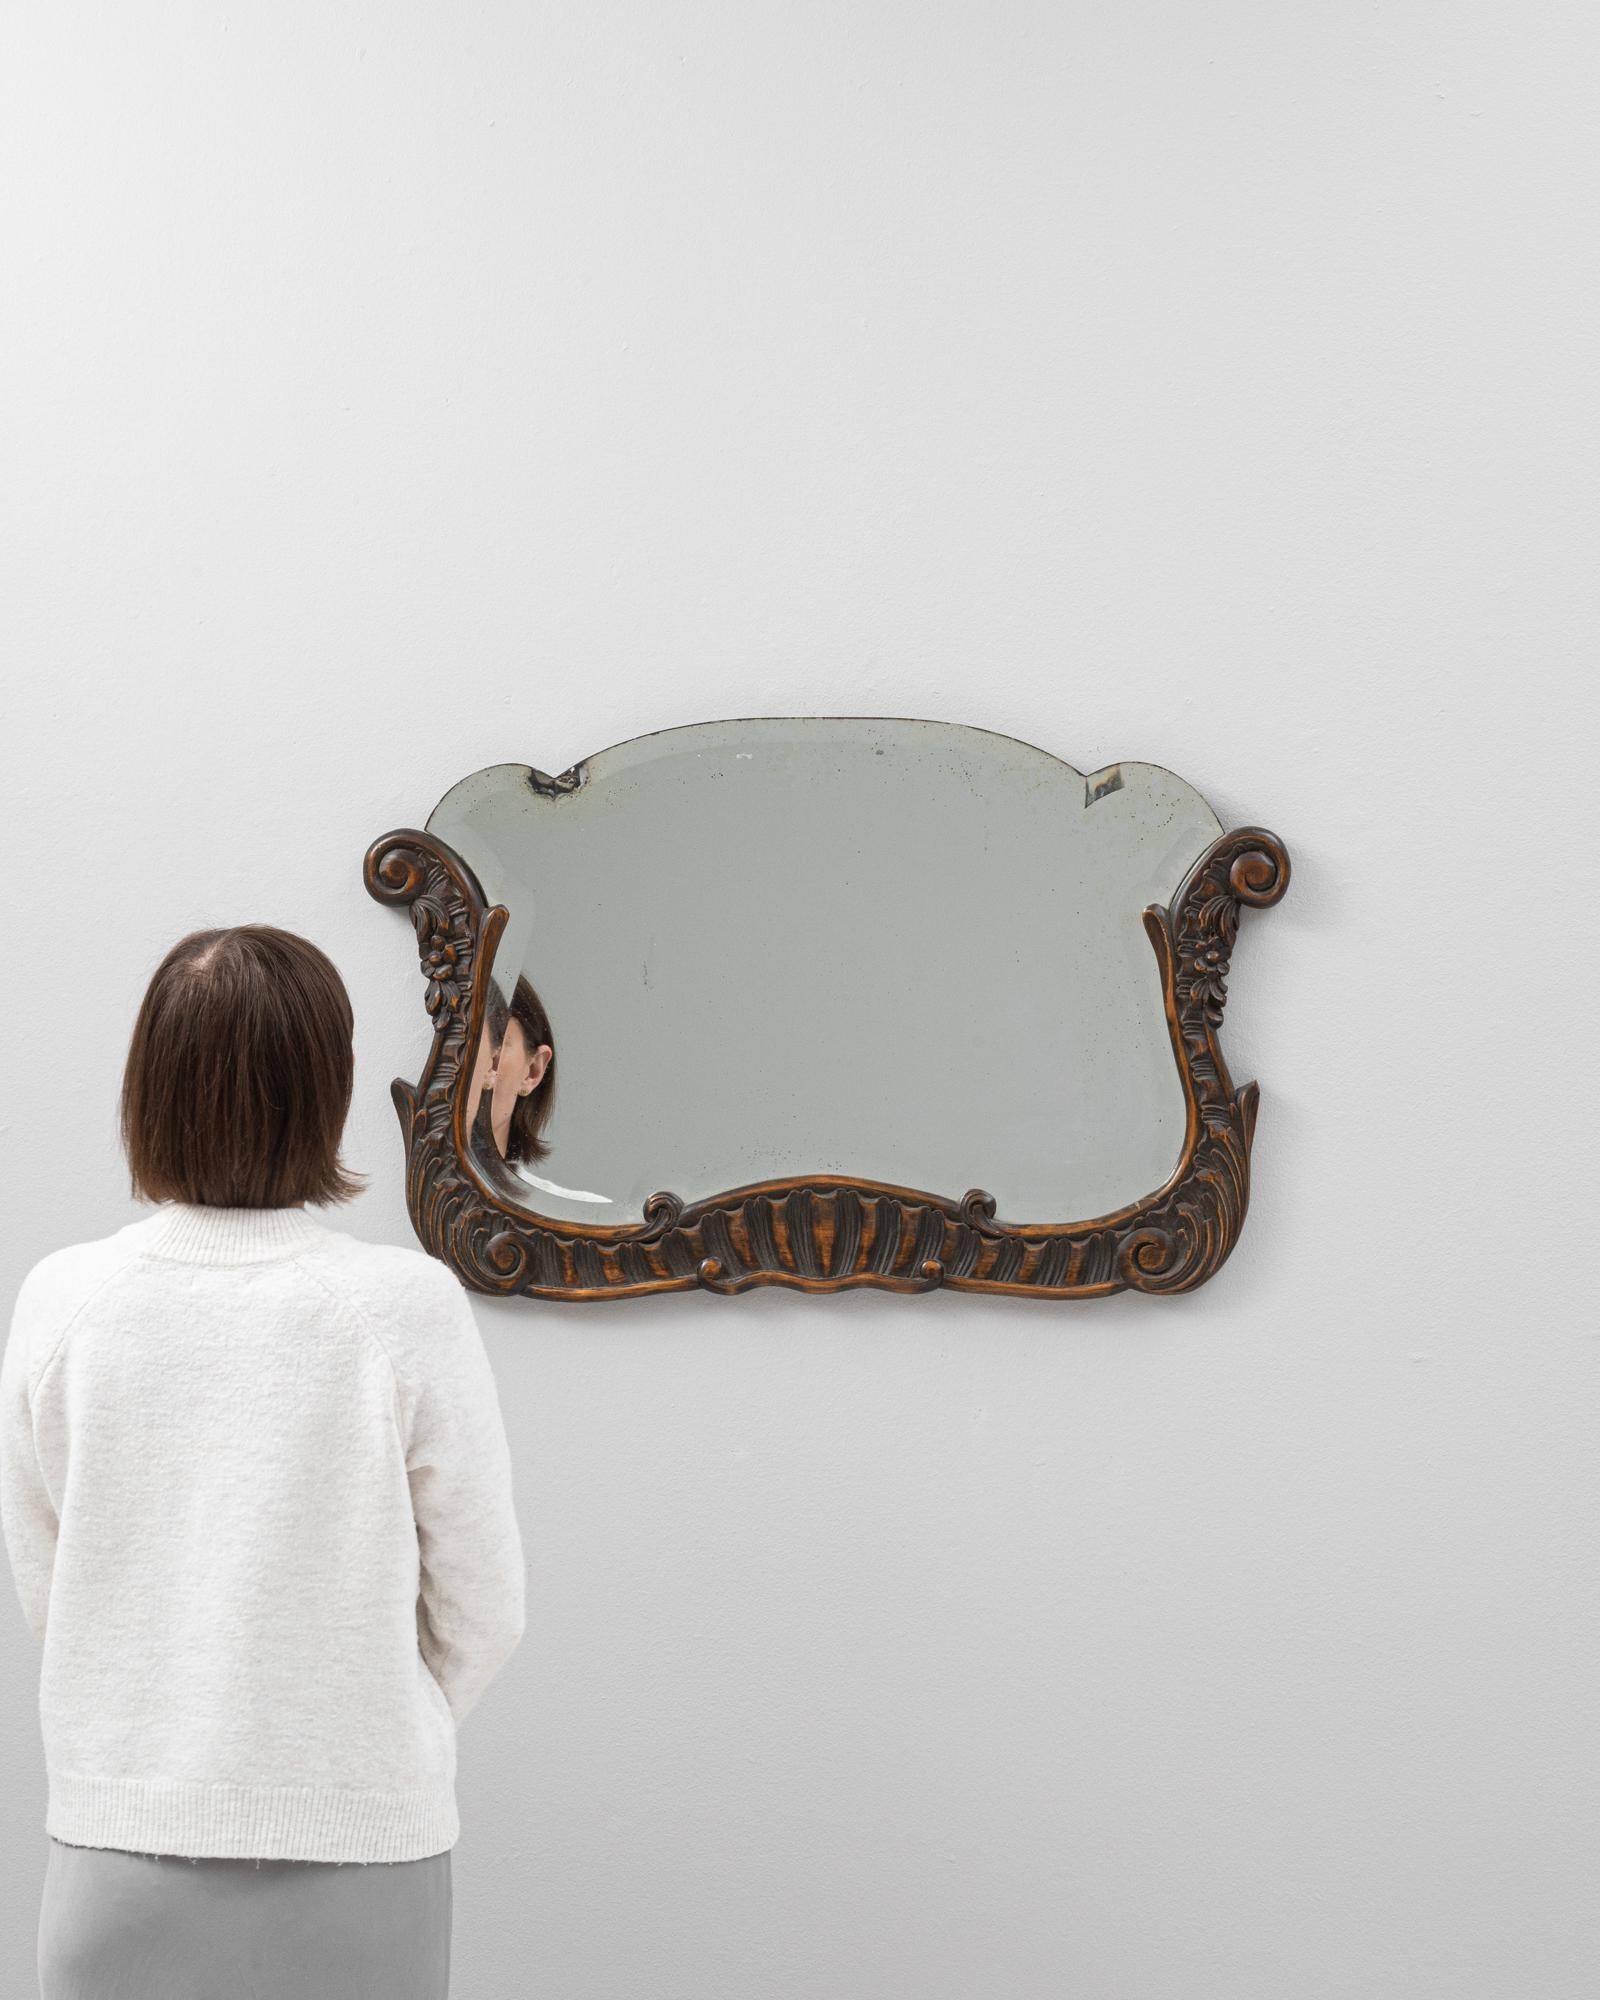 Ce miroir belge en bois du début du 20e siècle est une trouvaille exquise, imprégnée de l'élégance d'une époque révolue. Son cadre en bois orné, sculpté de détails et de fioritures complexes, porte la riche patine du temps, offrant un aspect